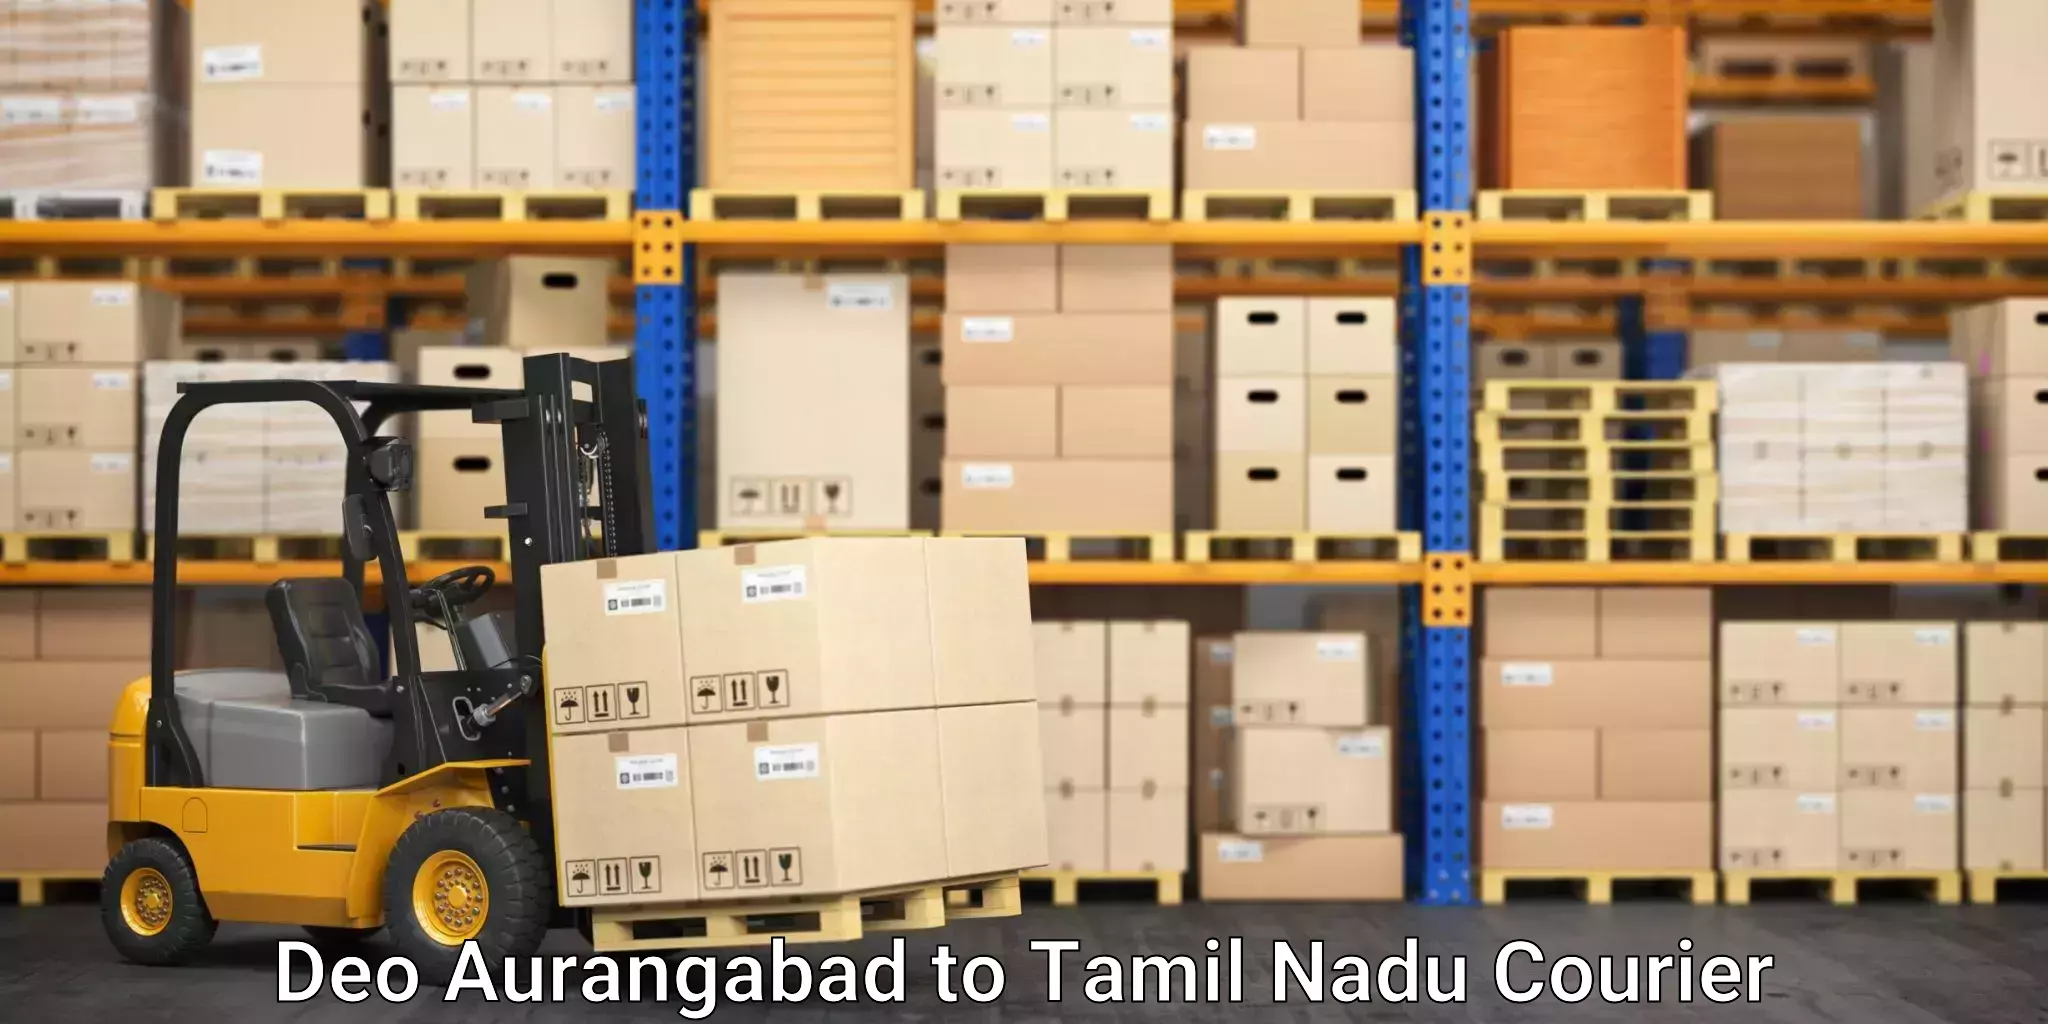 Professional packing services Deo Aurangabad to Avinashi